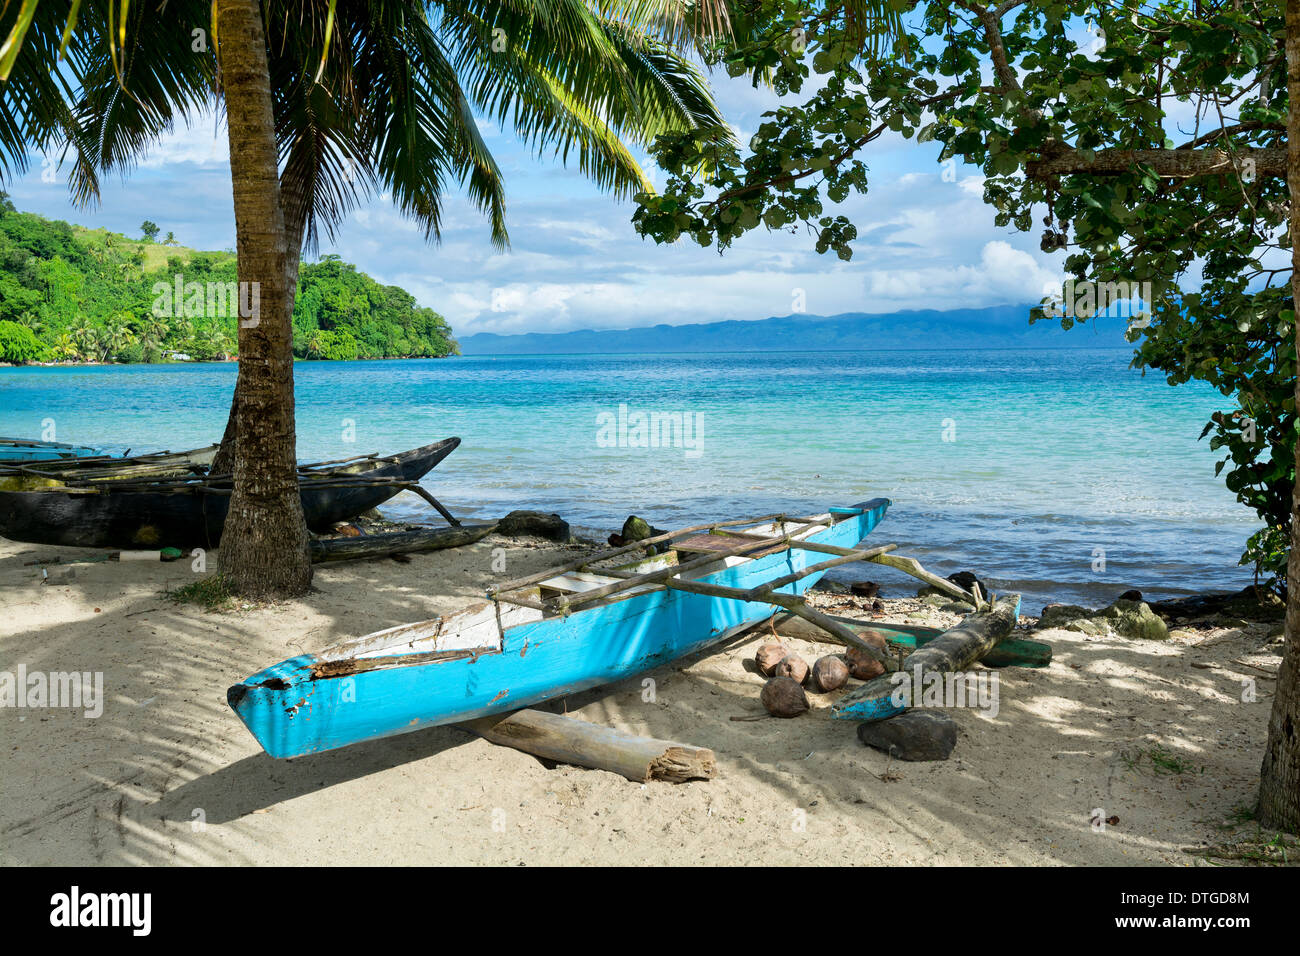 Outrigger Polinesia azul que se utiliza aún hoy descansa en la orilla de una isla tropical en Fiji Foto de stock